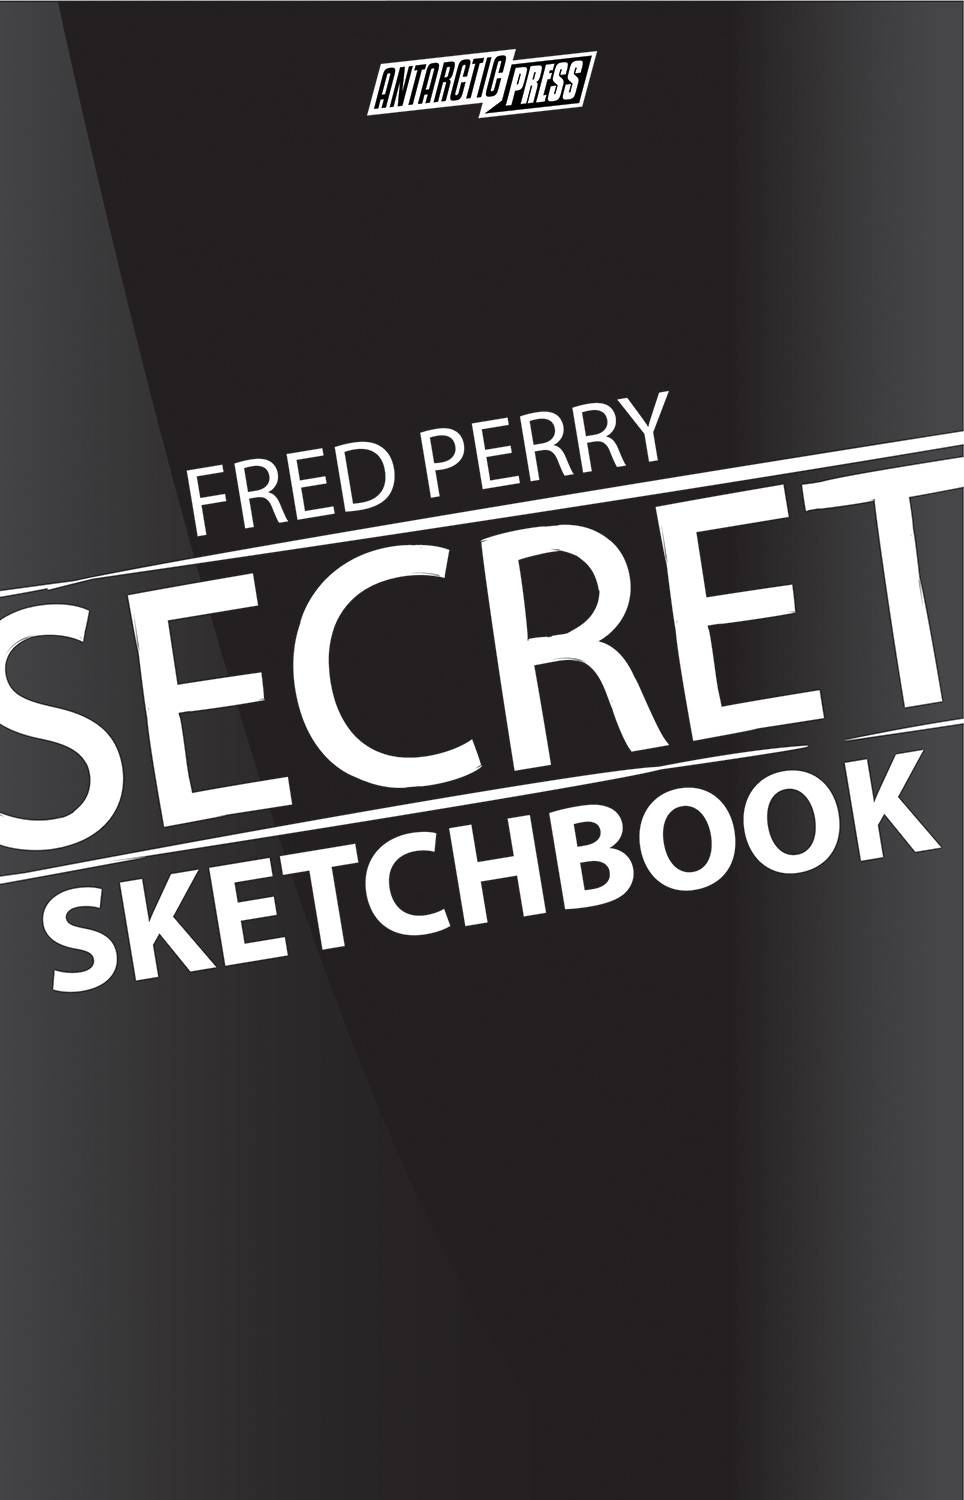 FRED PERRY SECRET SKETCHBOOK